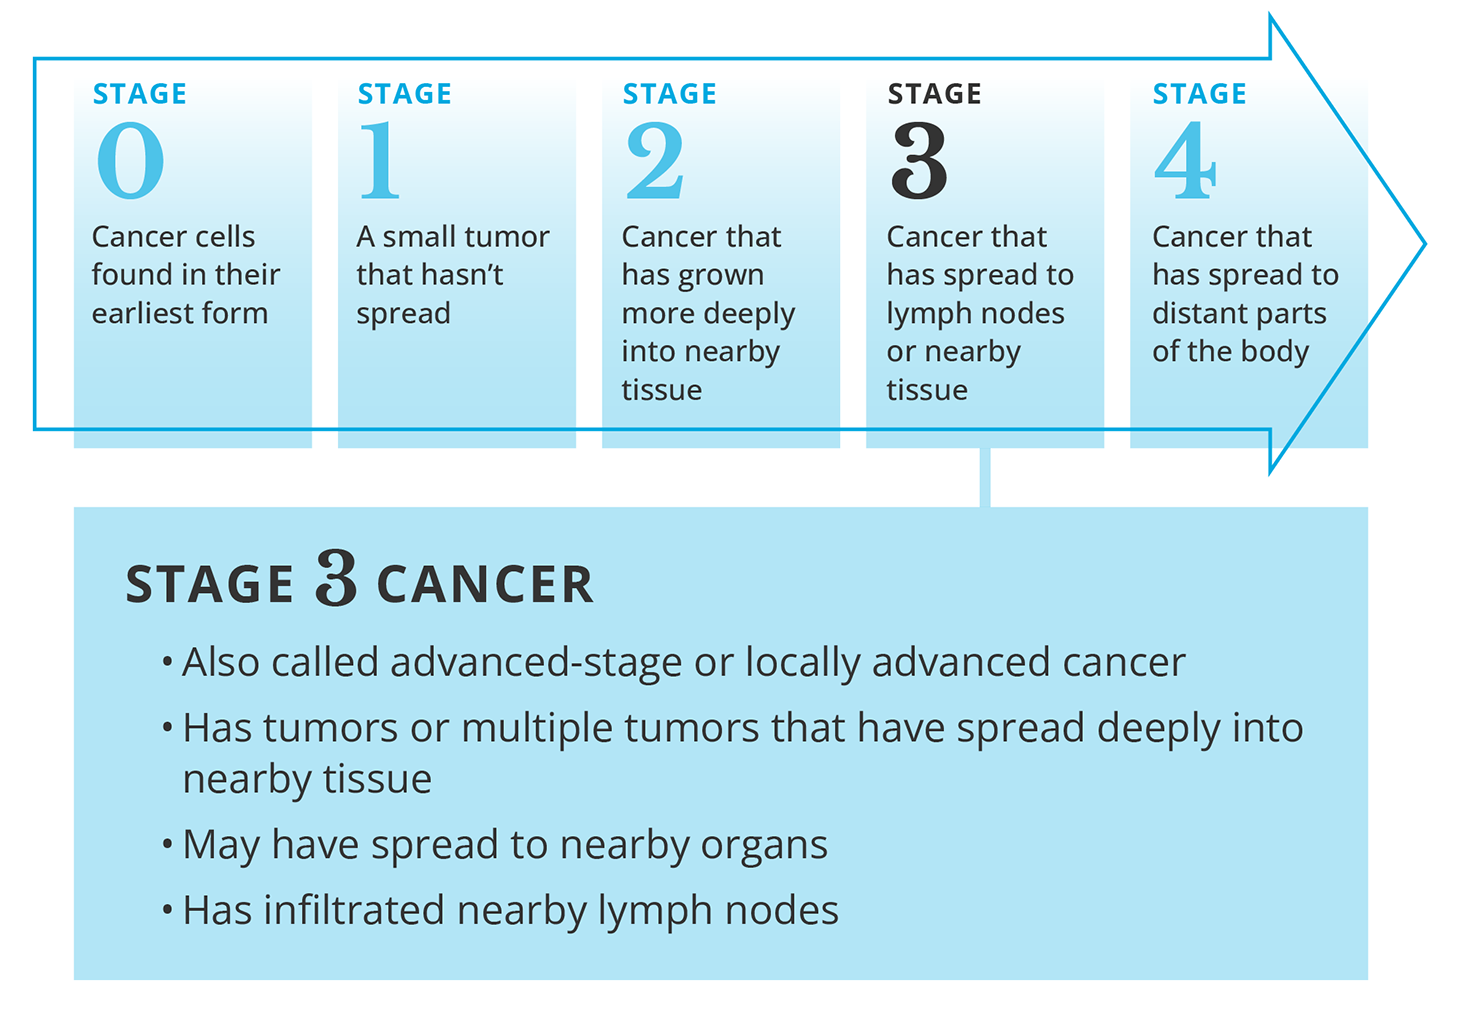 Description of stage 3 cancer